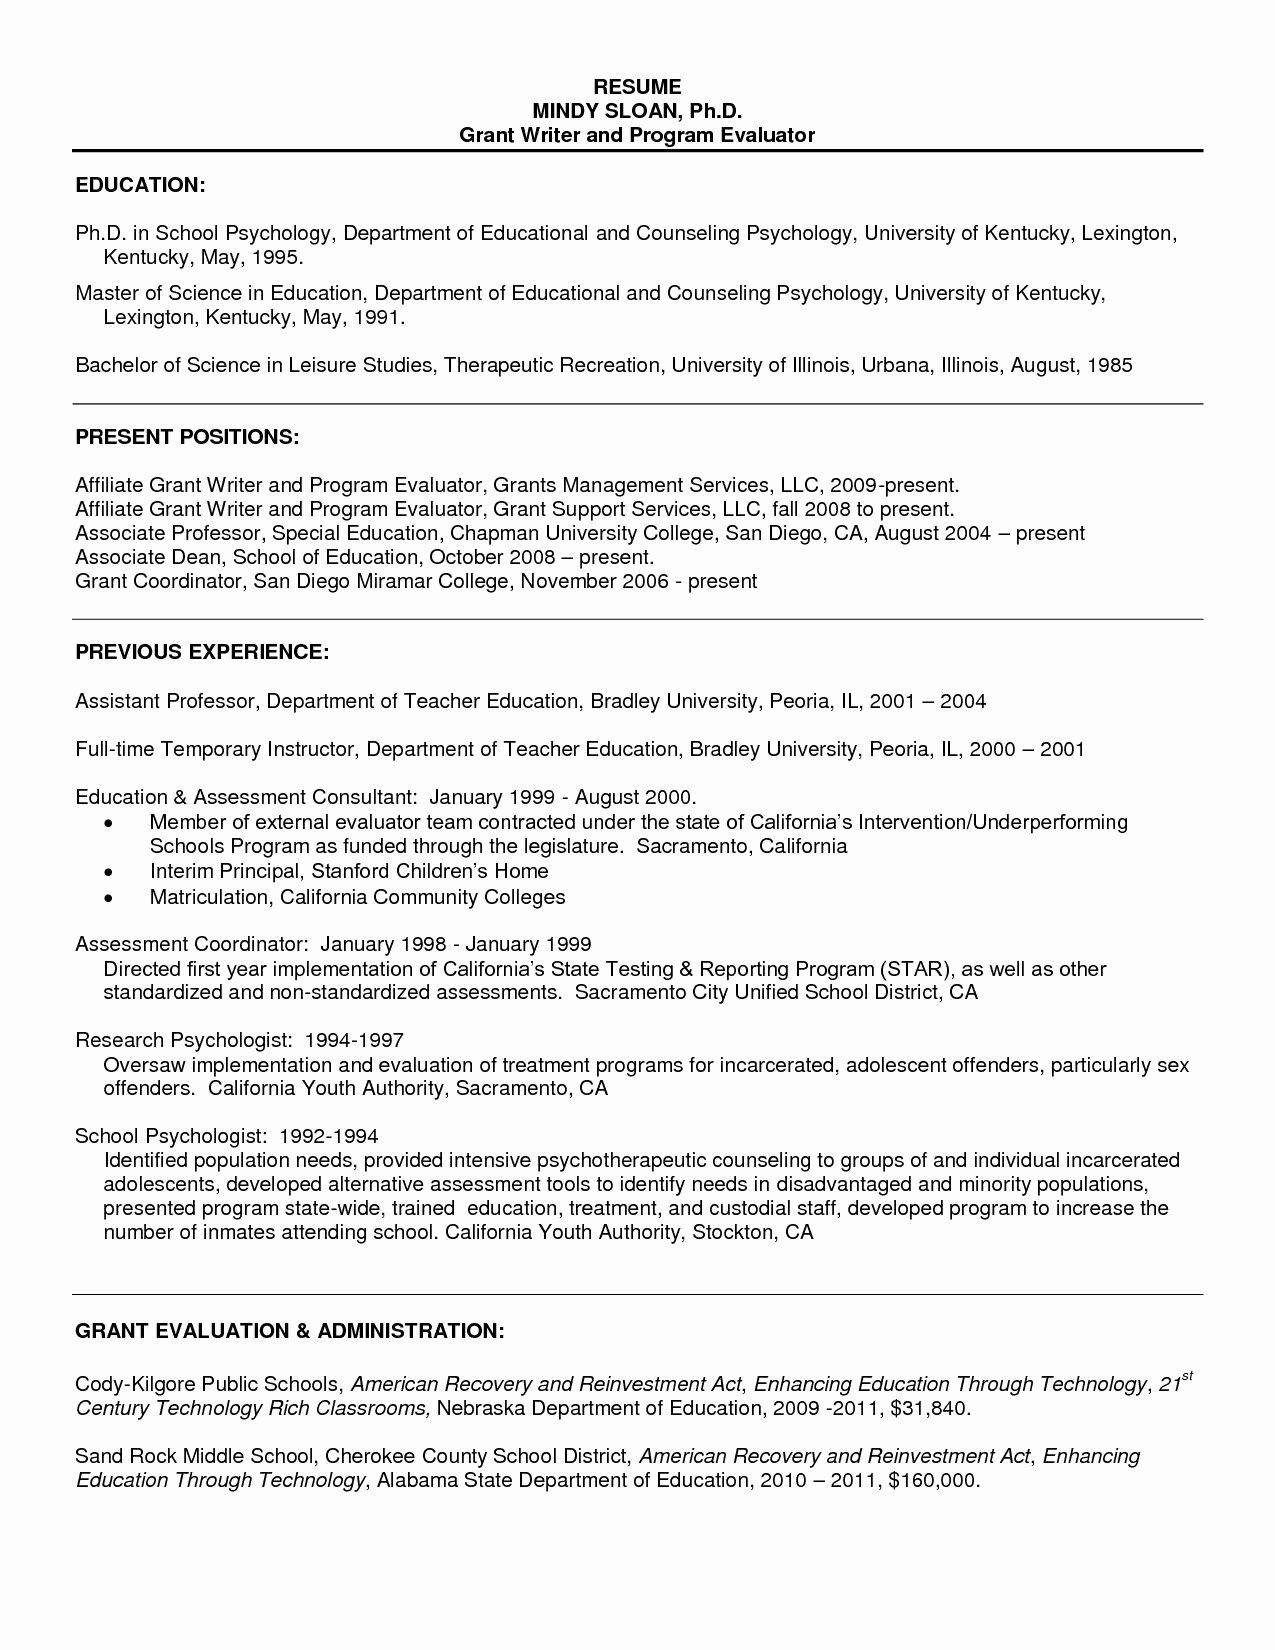 Sample Resume for Psychology Graduate